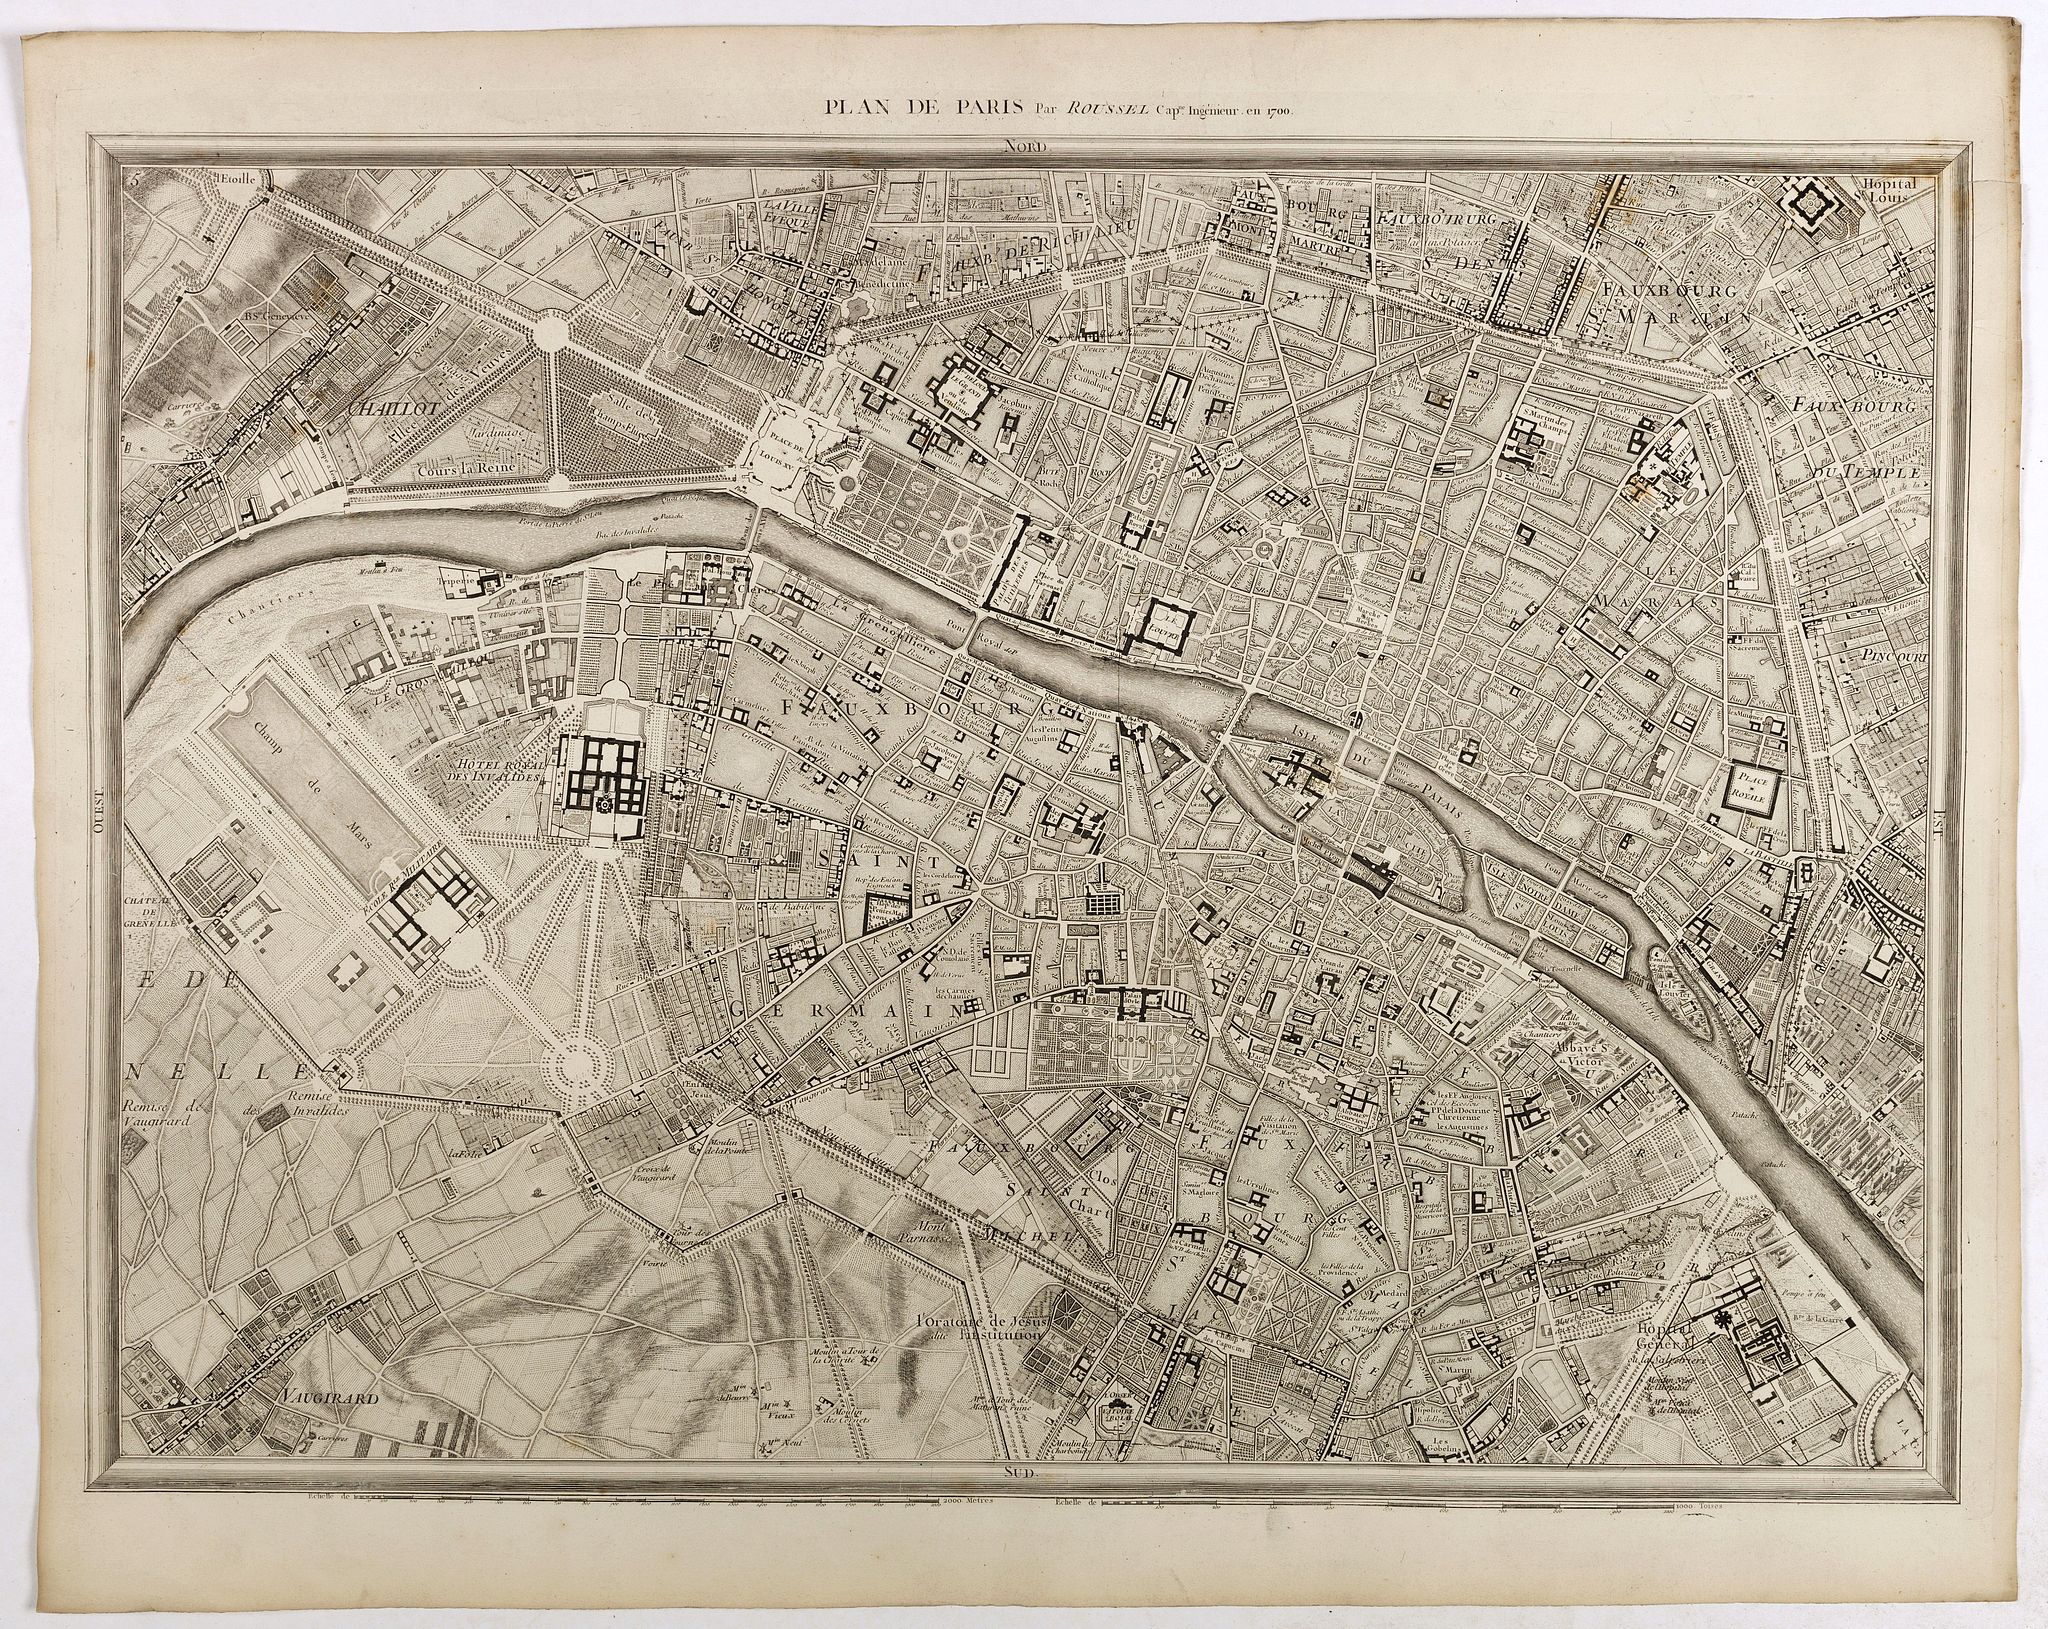 Plan de Paris Par Roussel Caqpt. Ingnieur en 1700.